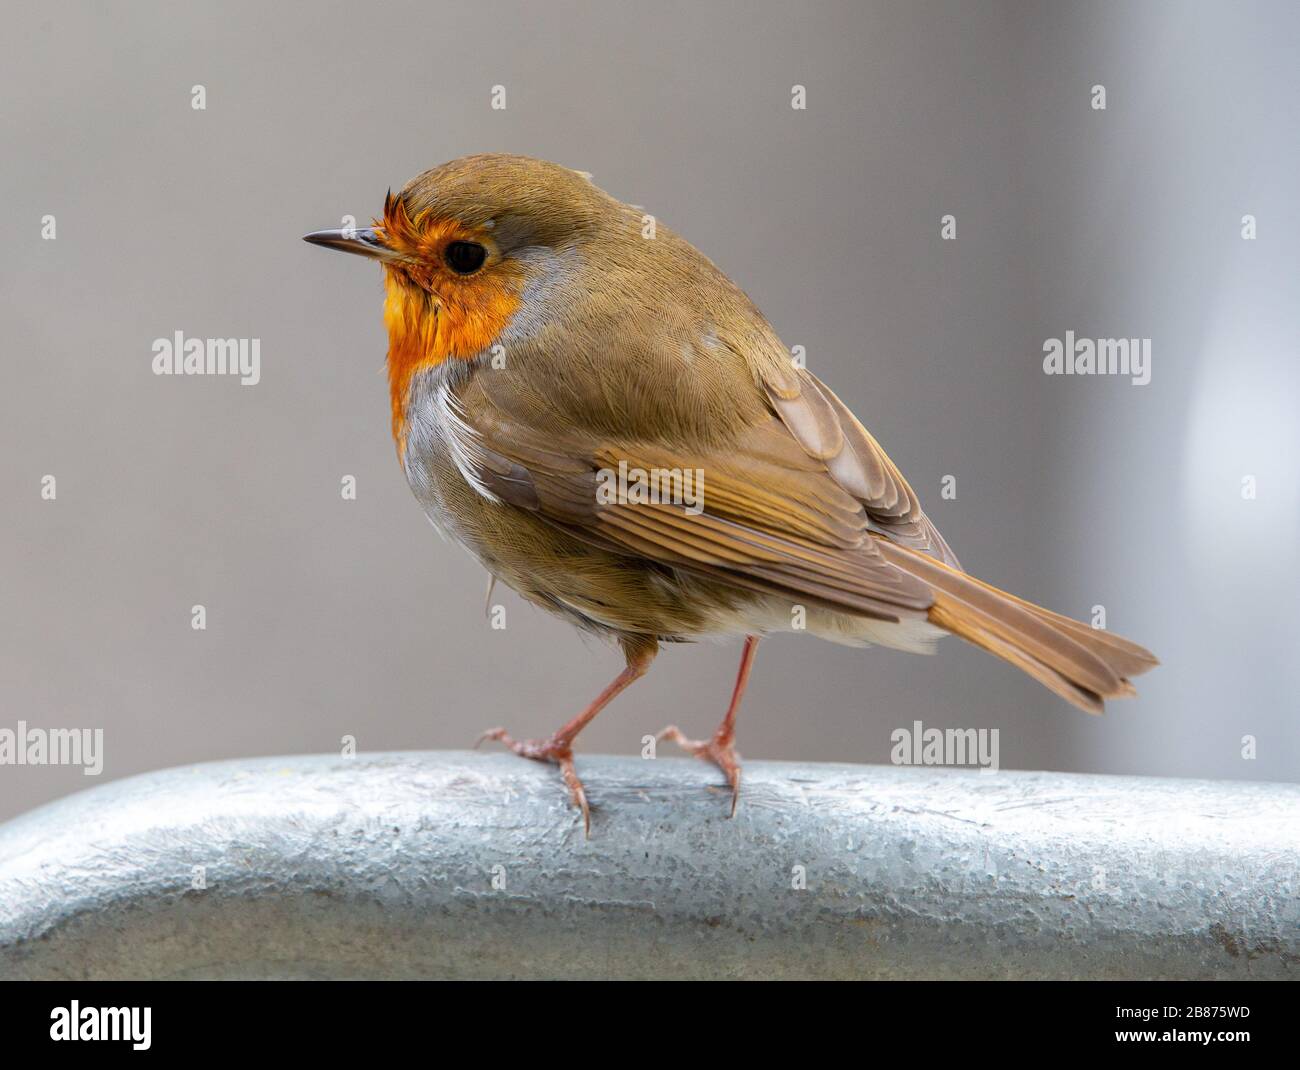 Un robin, votato l'uccello nazionale degli UKs da oltre 200,000 persone, è intrecciato nella Psiche Nazionale. Ha una natura amichevole e un piumaggio molto attraente. Foto Stock